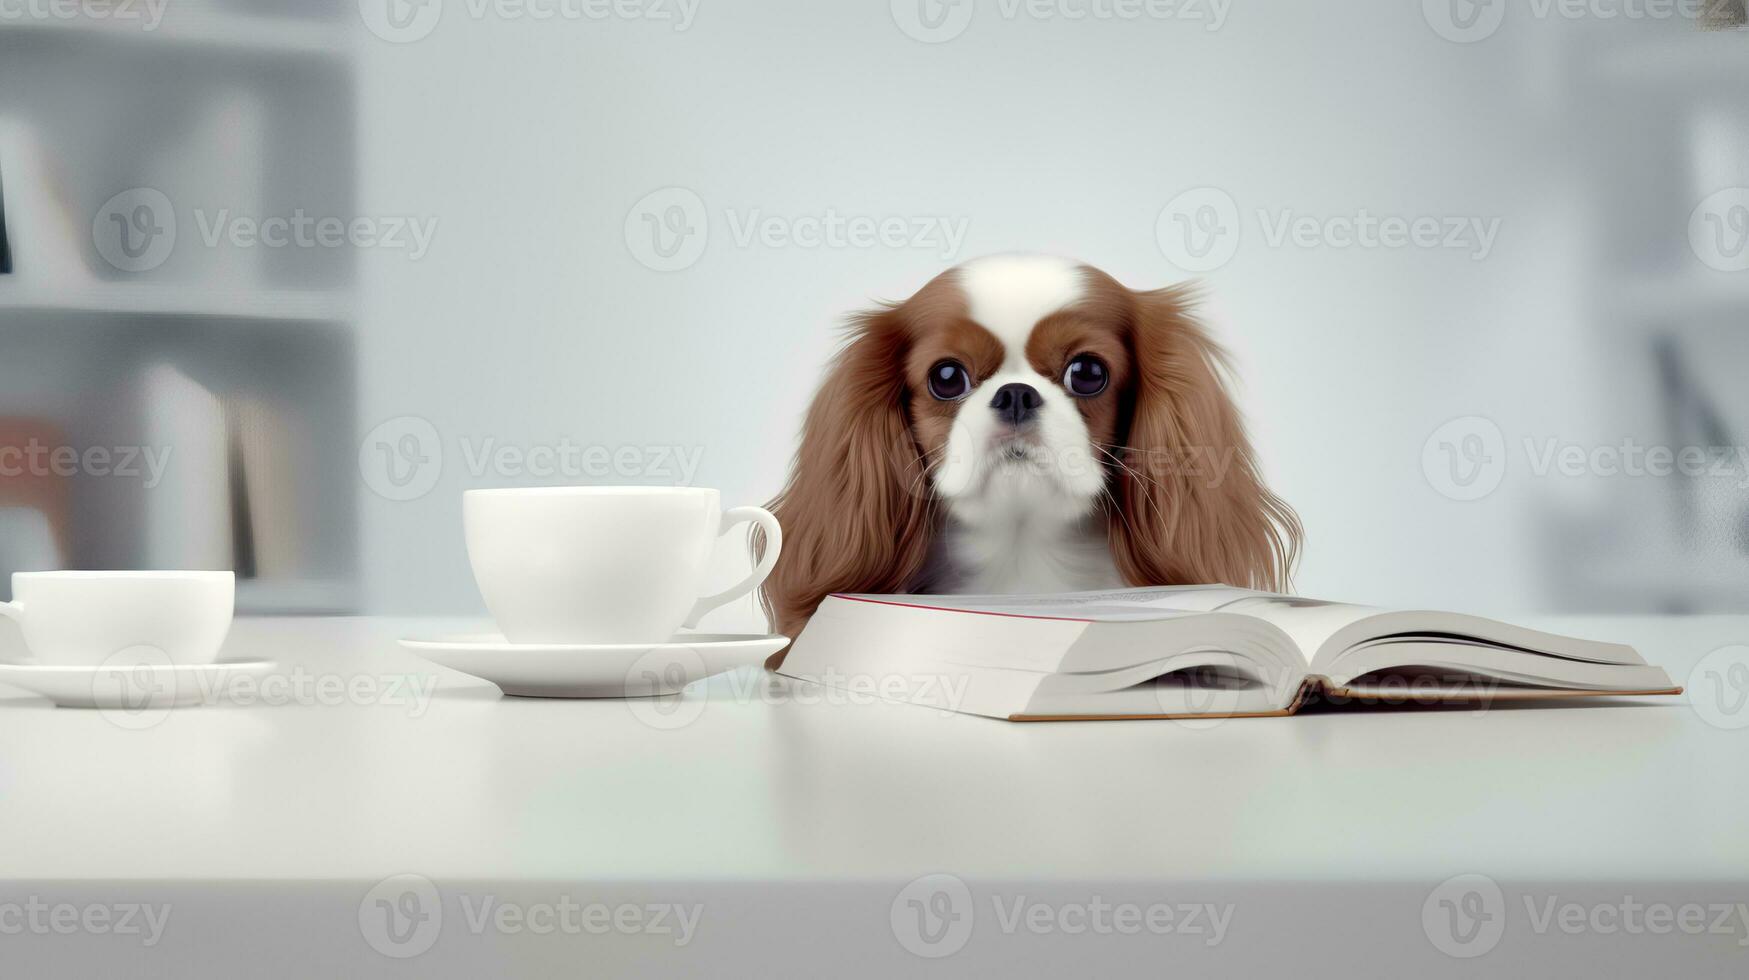 un caballero perro se sienta estudiando acompañado por un taza y pila de algo de libros foto